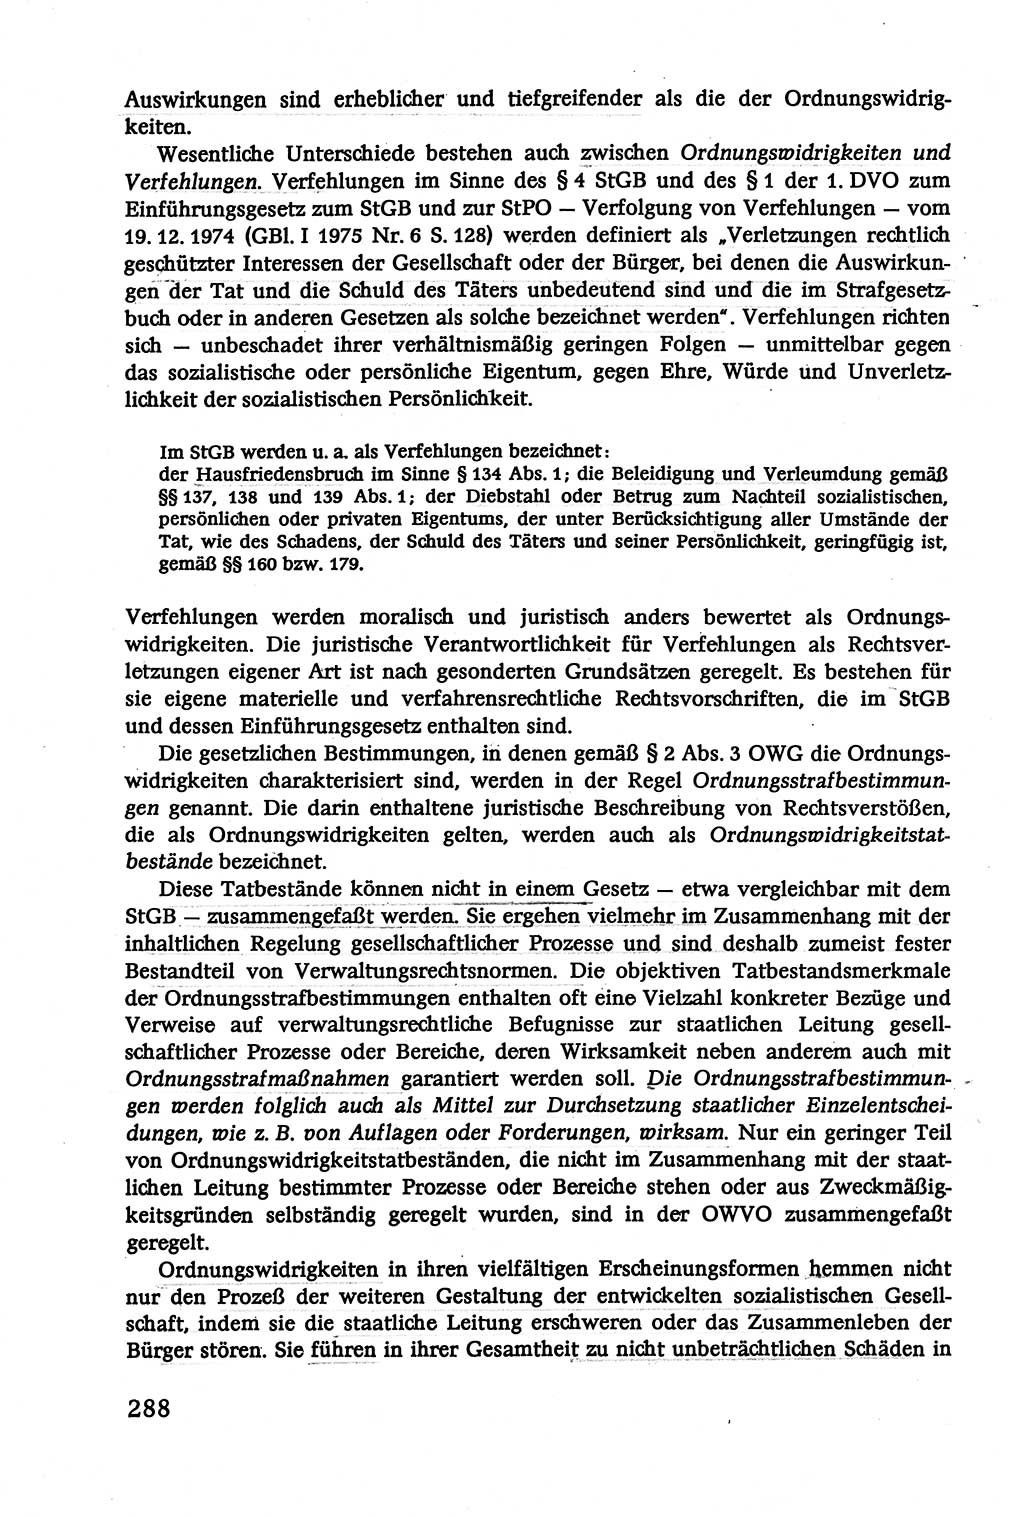 Verwaltungsrecht [Deutsche Demokratische Republik (DDR)], Lehrbuch 1979, Seite 288 (Verw.-R. DDR Lb. 1979, S. 288)